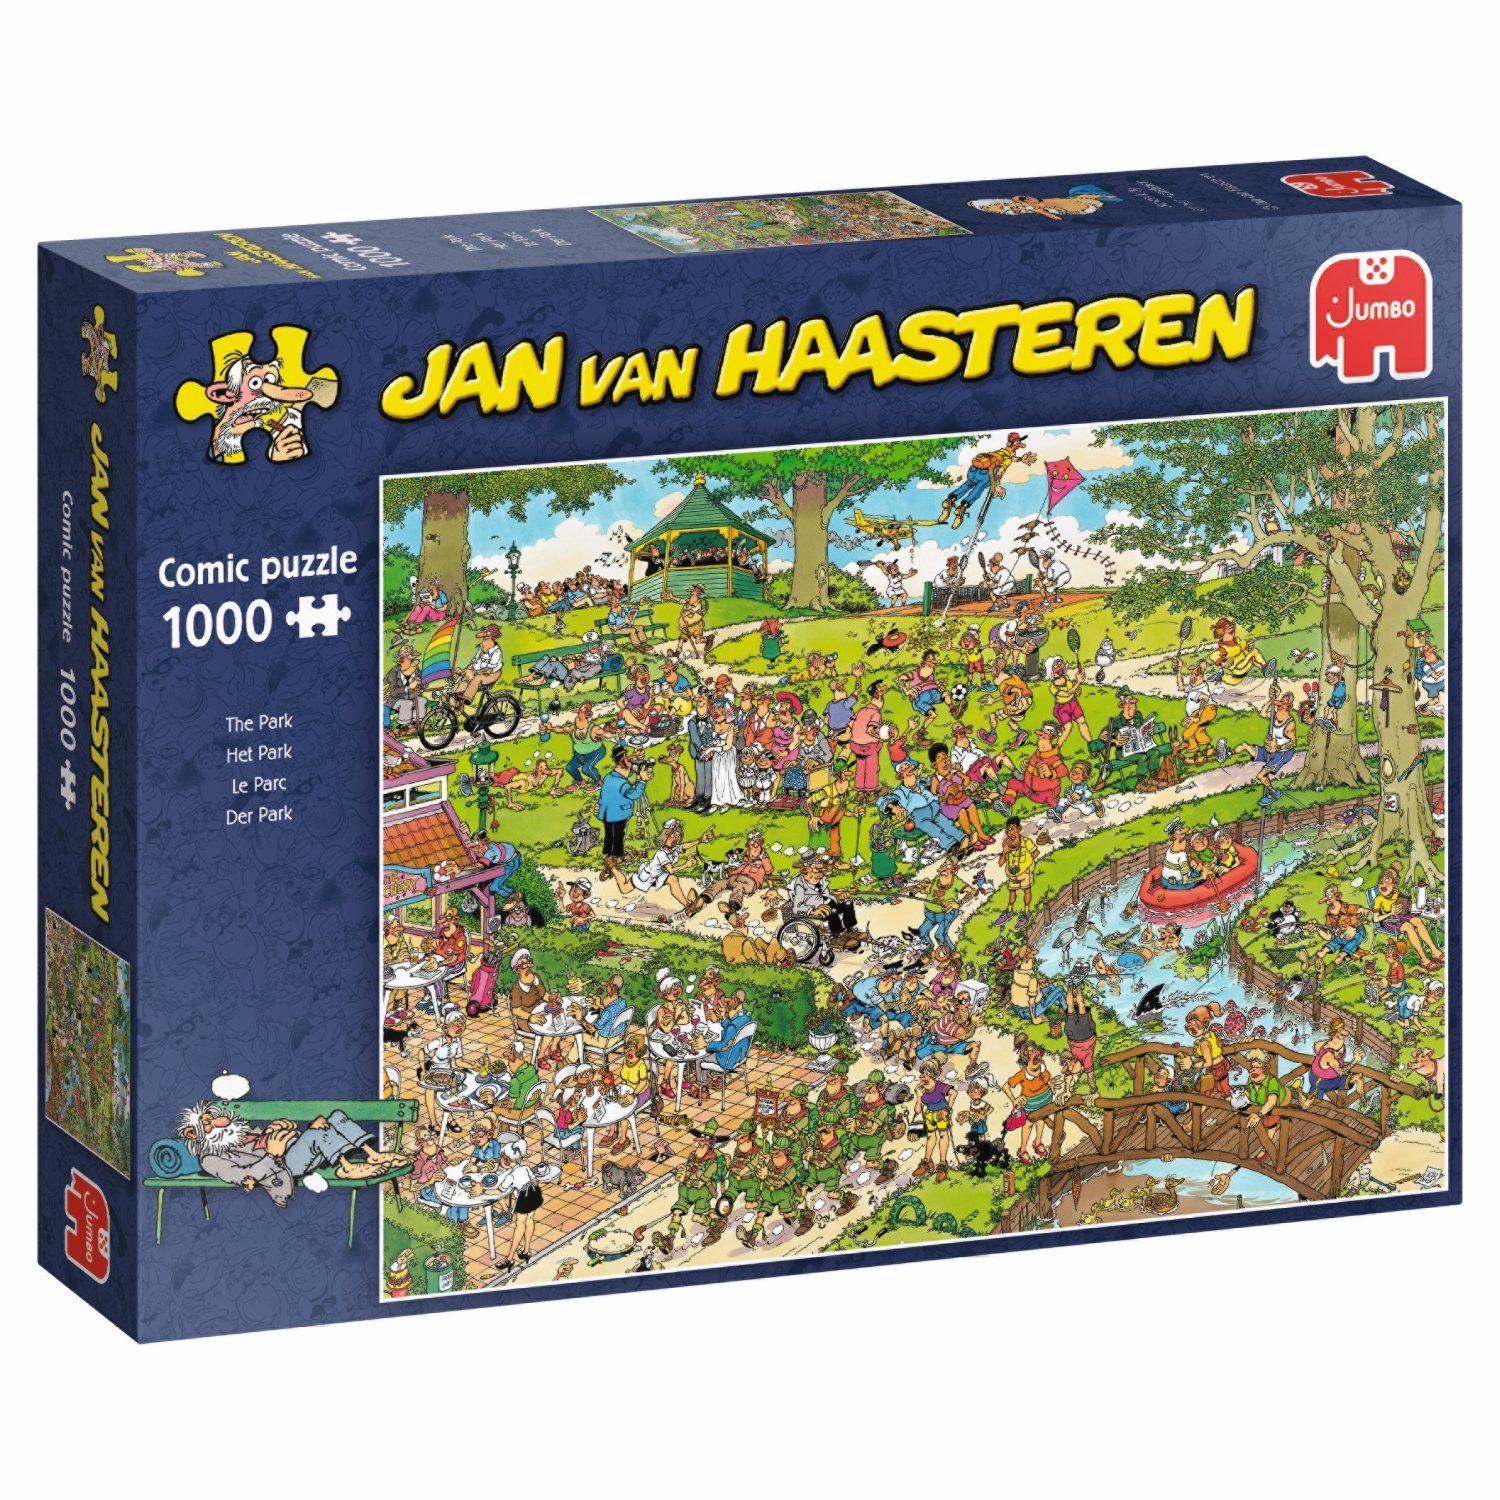 Jumbo Spiele Puzzle Jumbo Spiele 1119800101 Jan van Haasteren Der Park, 1000 Puzzleteile